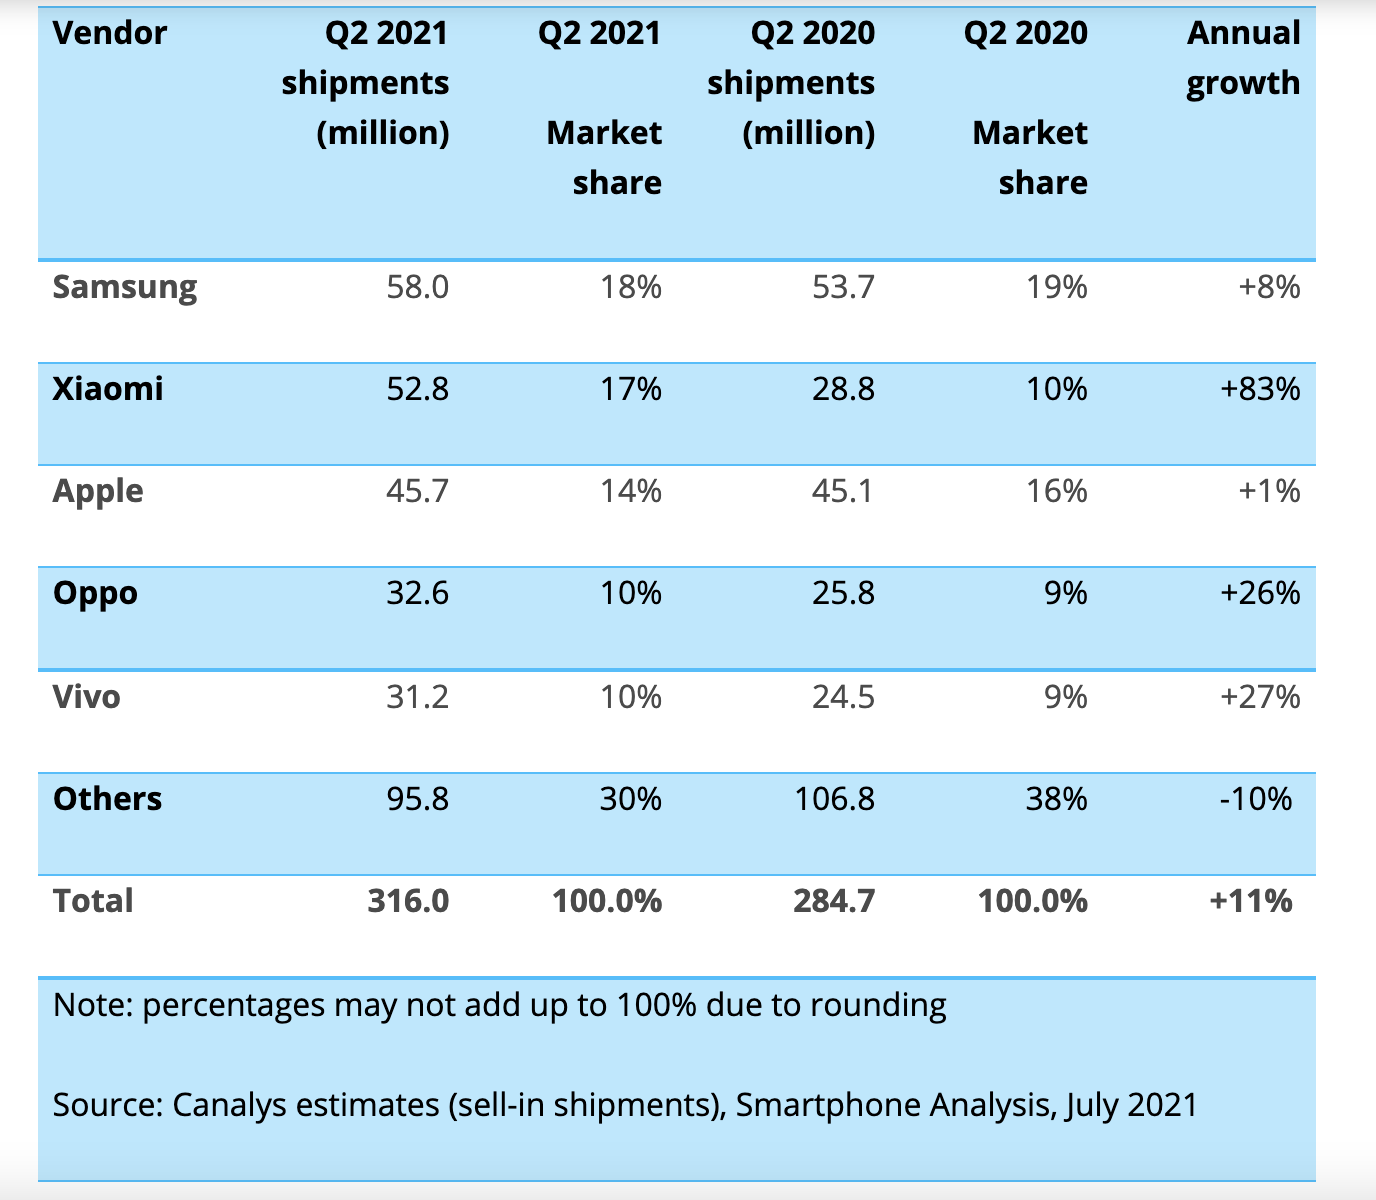 Xiaomi khẳng định vị trí nhà sản xuất smartphone thứ 2 thế giới trong quý 2 năm 2021